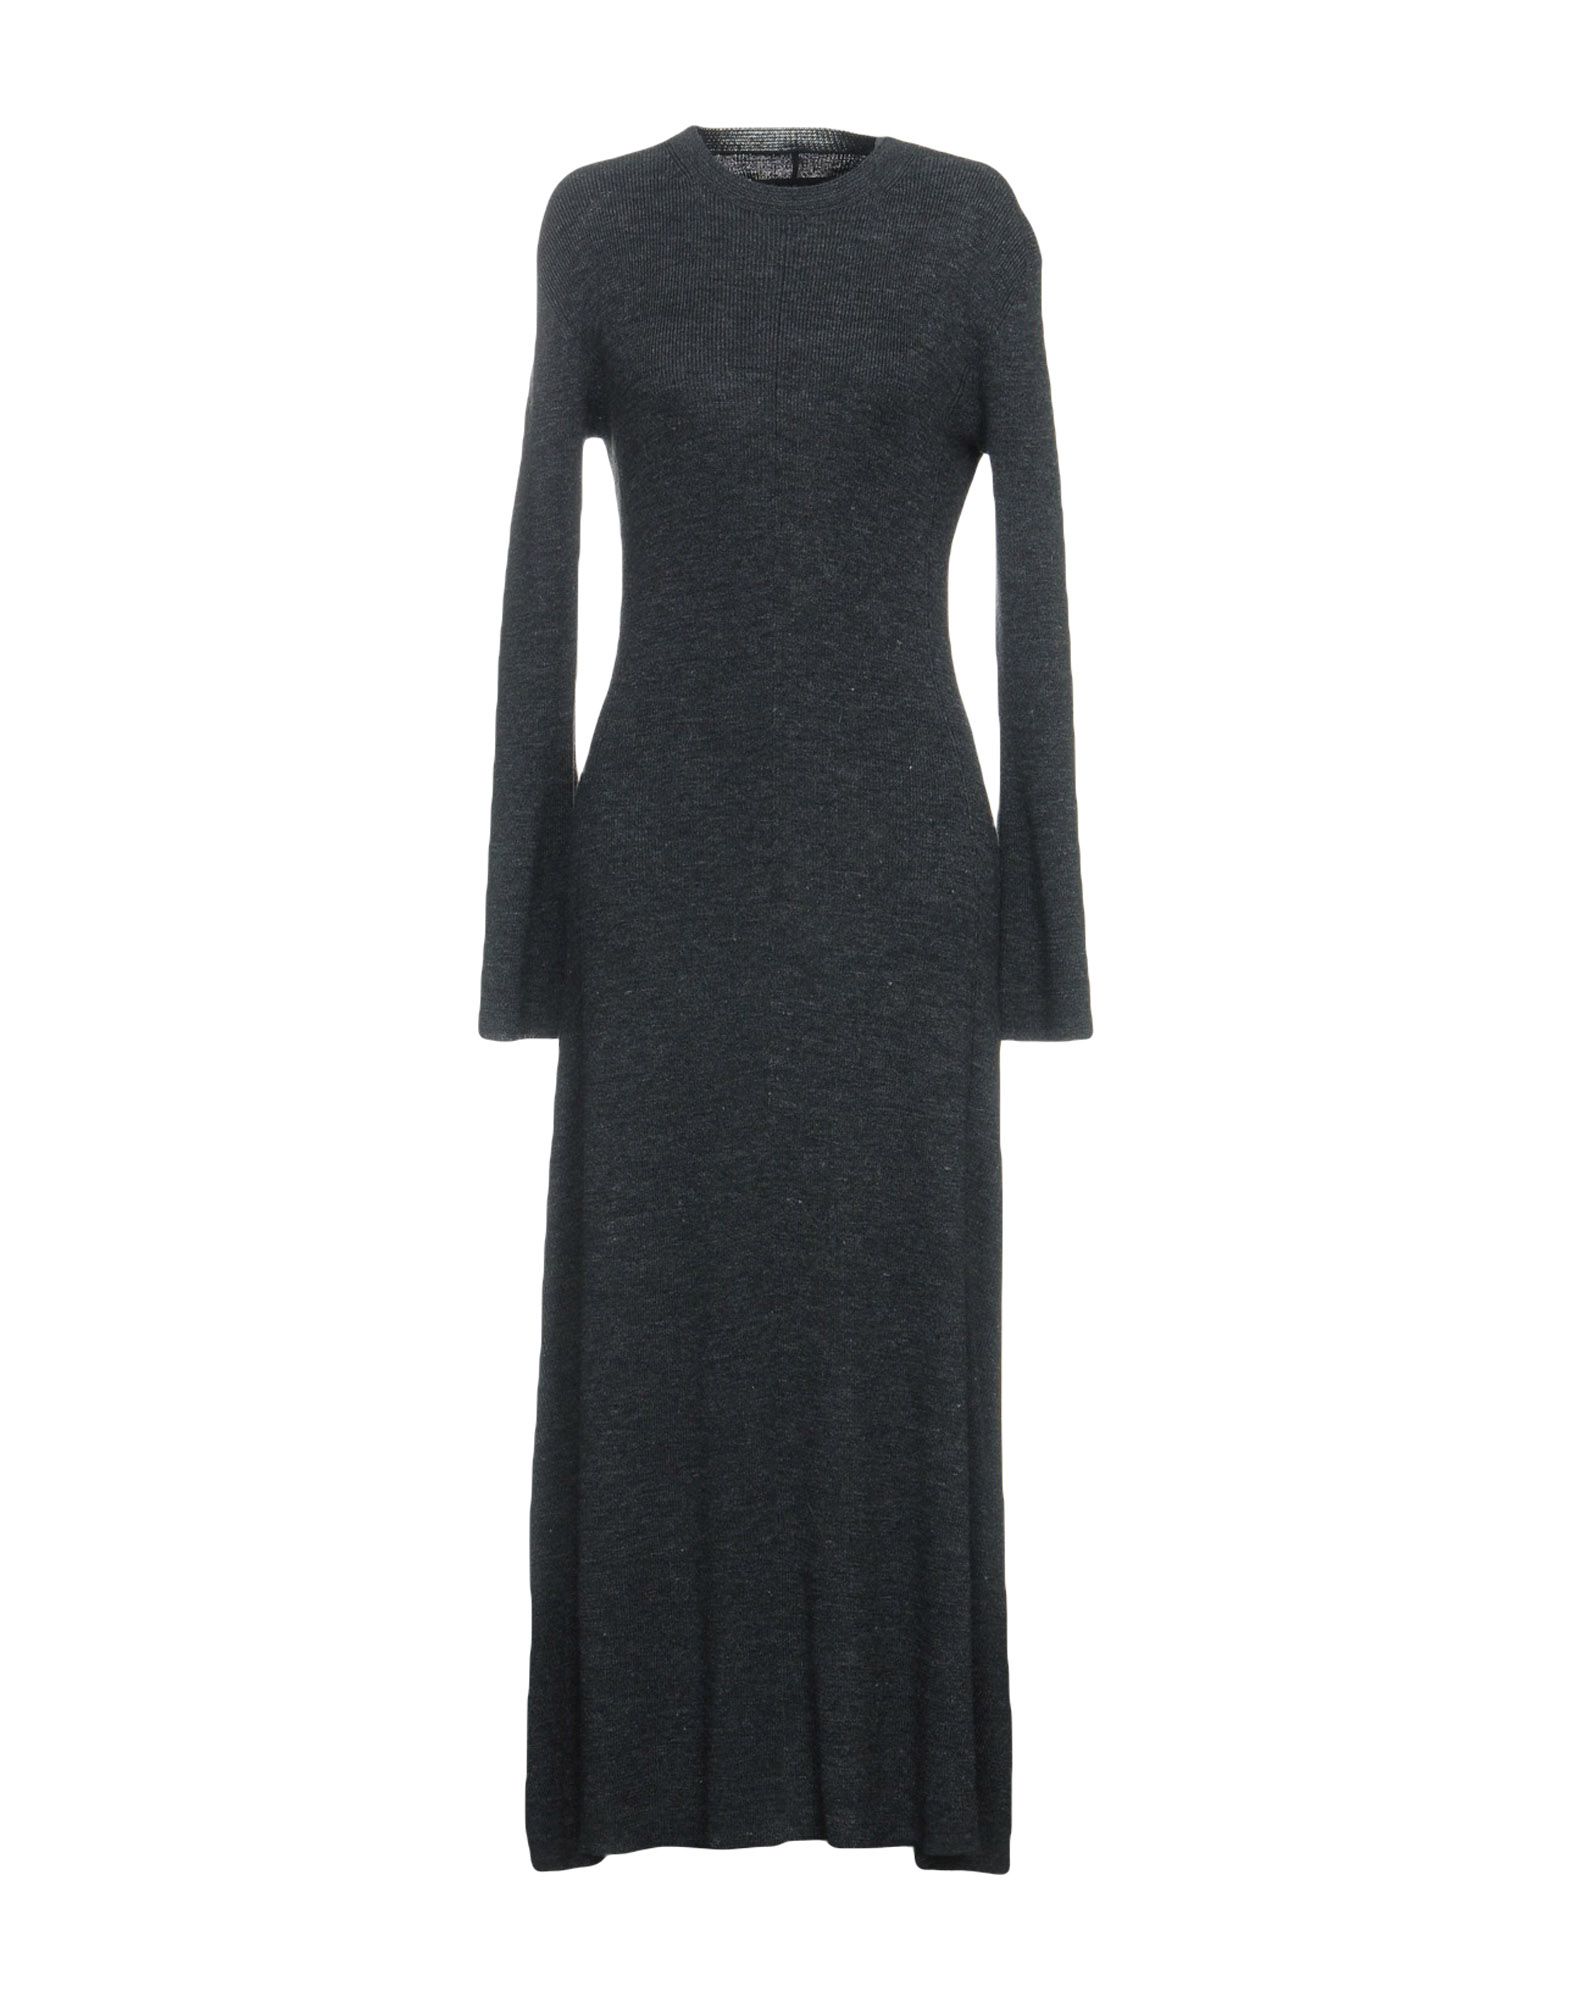 BY MALENE BIRGER 3/4 length dress,55016649NV 5